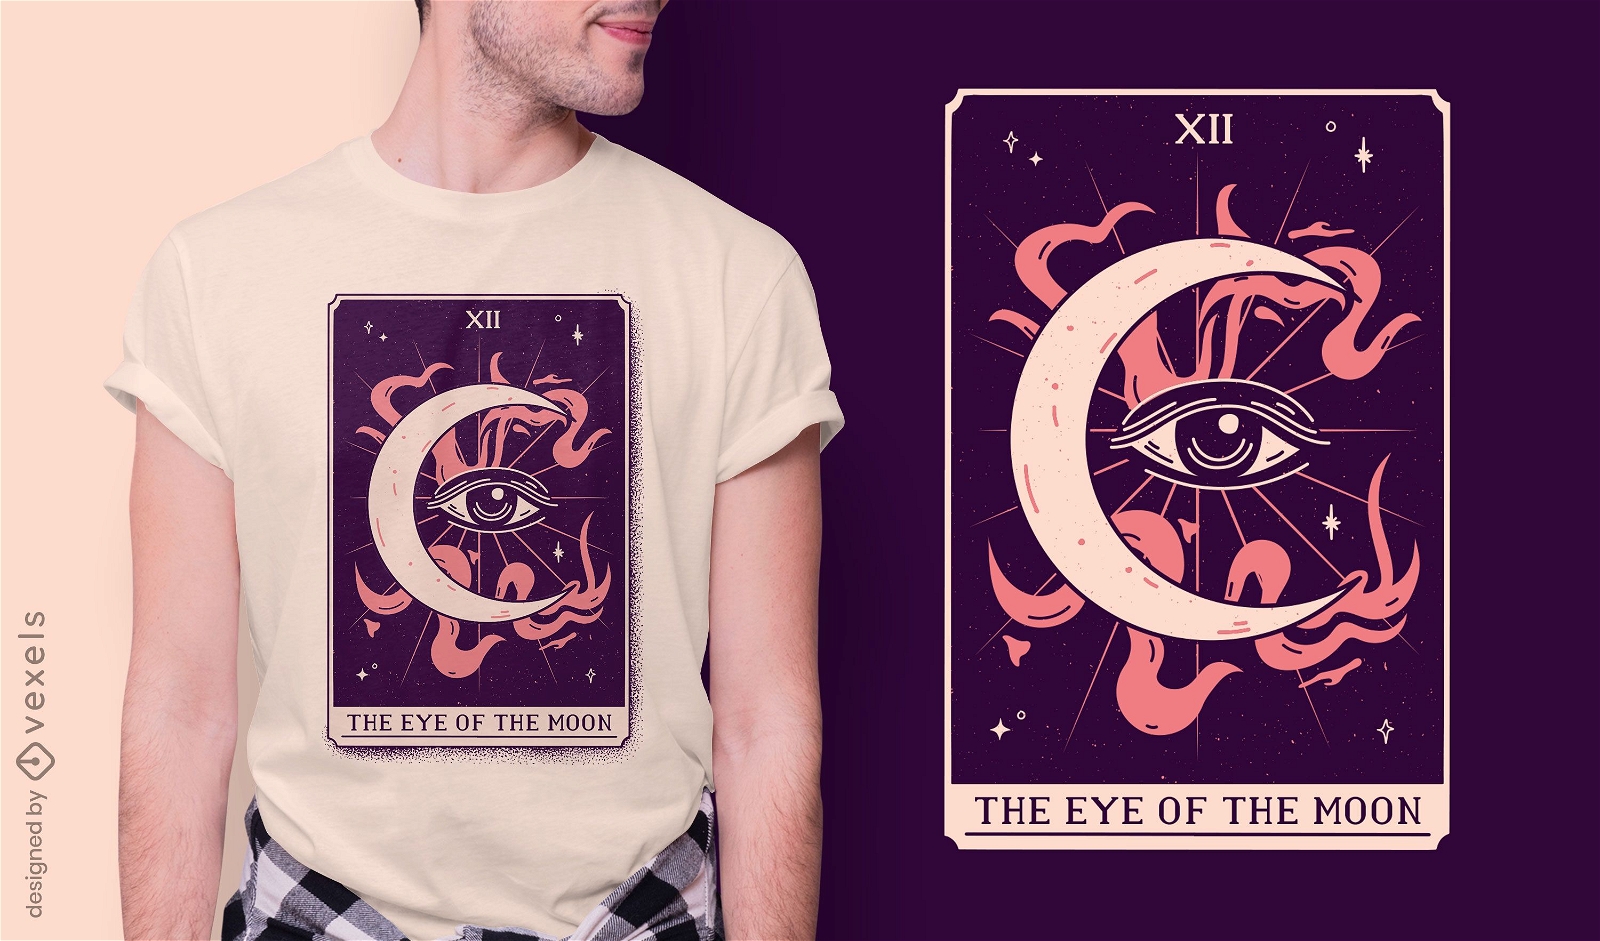 Eye on the moon design místico de t-shirt com cartas de tarô